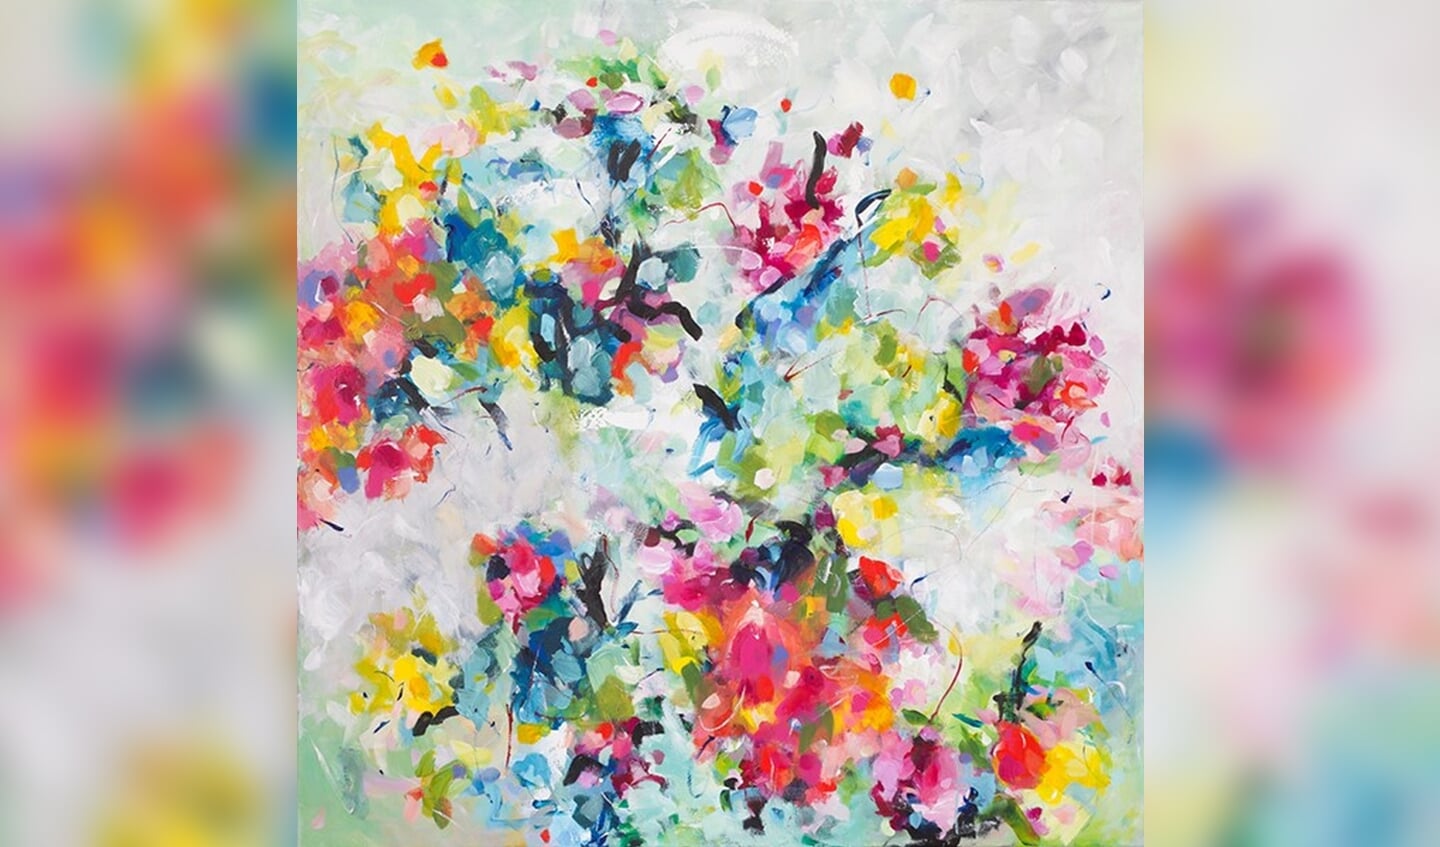 Een uitsnede uit een van de schilderijen van Conny Franssen waarin haar bloemige dynamische stijl te herkennen is.